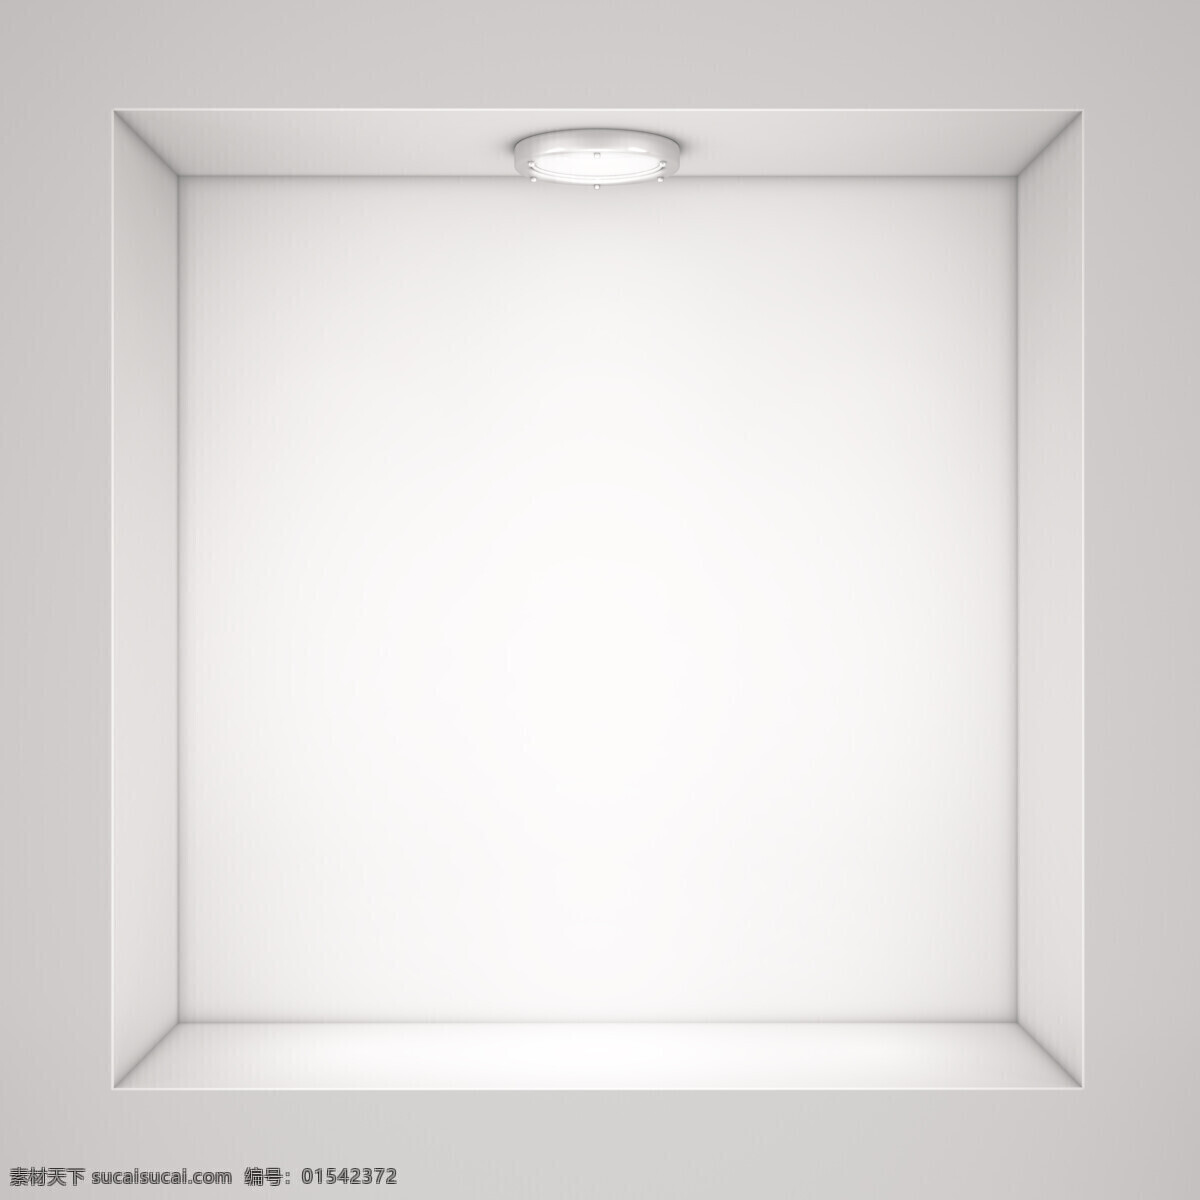 白色 墙壁 里 展台 方框 展示台 3d展示 展架 聚光灯 生活百科 矢量素材 其他类别 环境家居